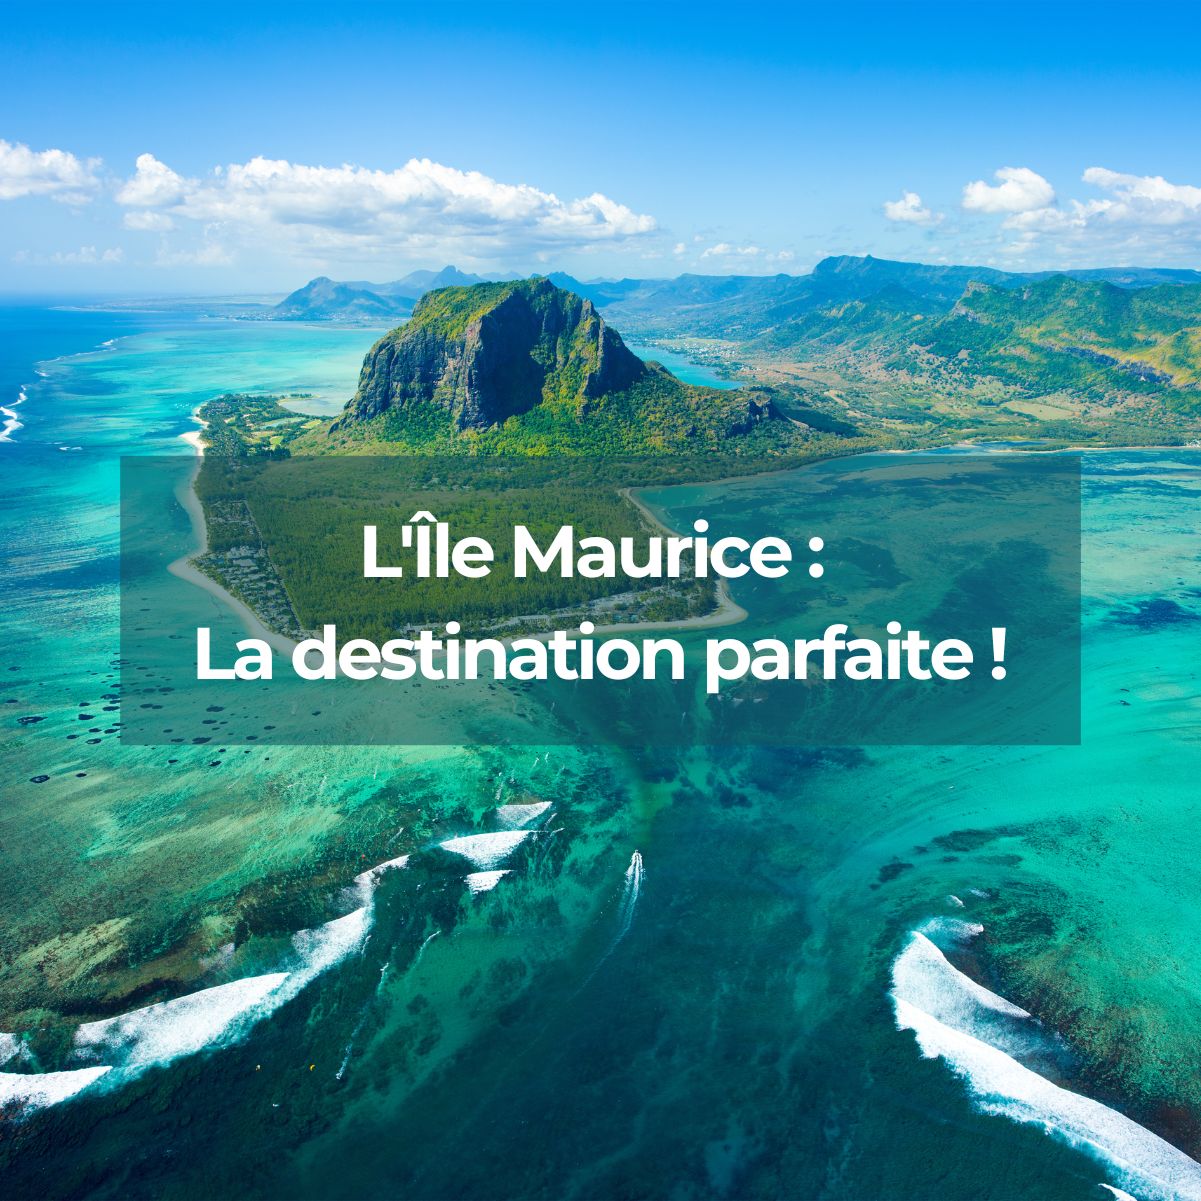 Pour des vacances de rêve : partez en Île Maurice